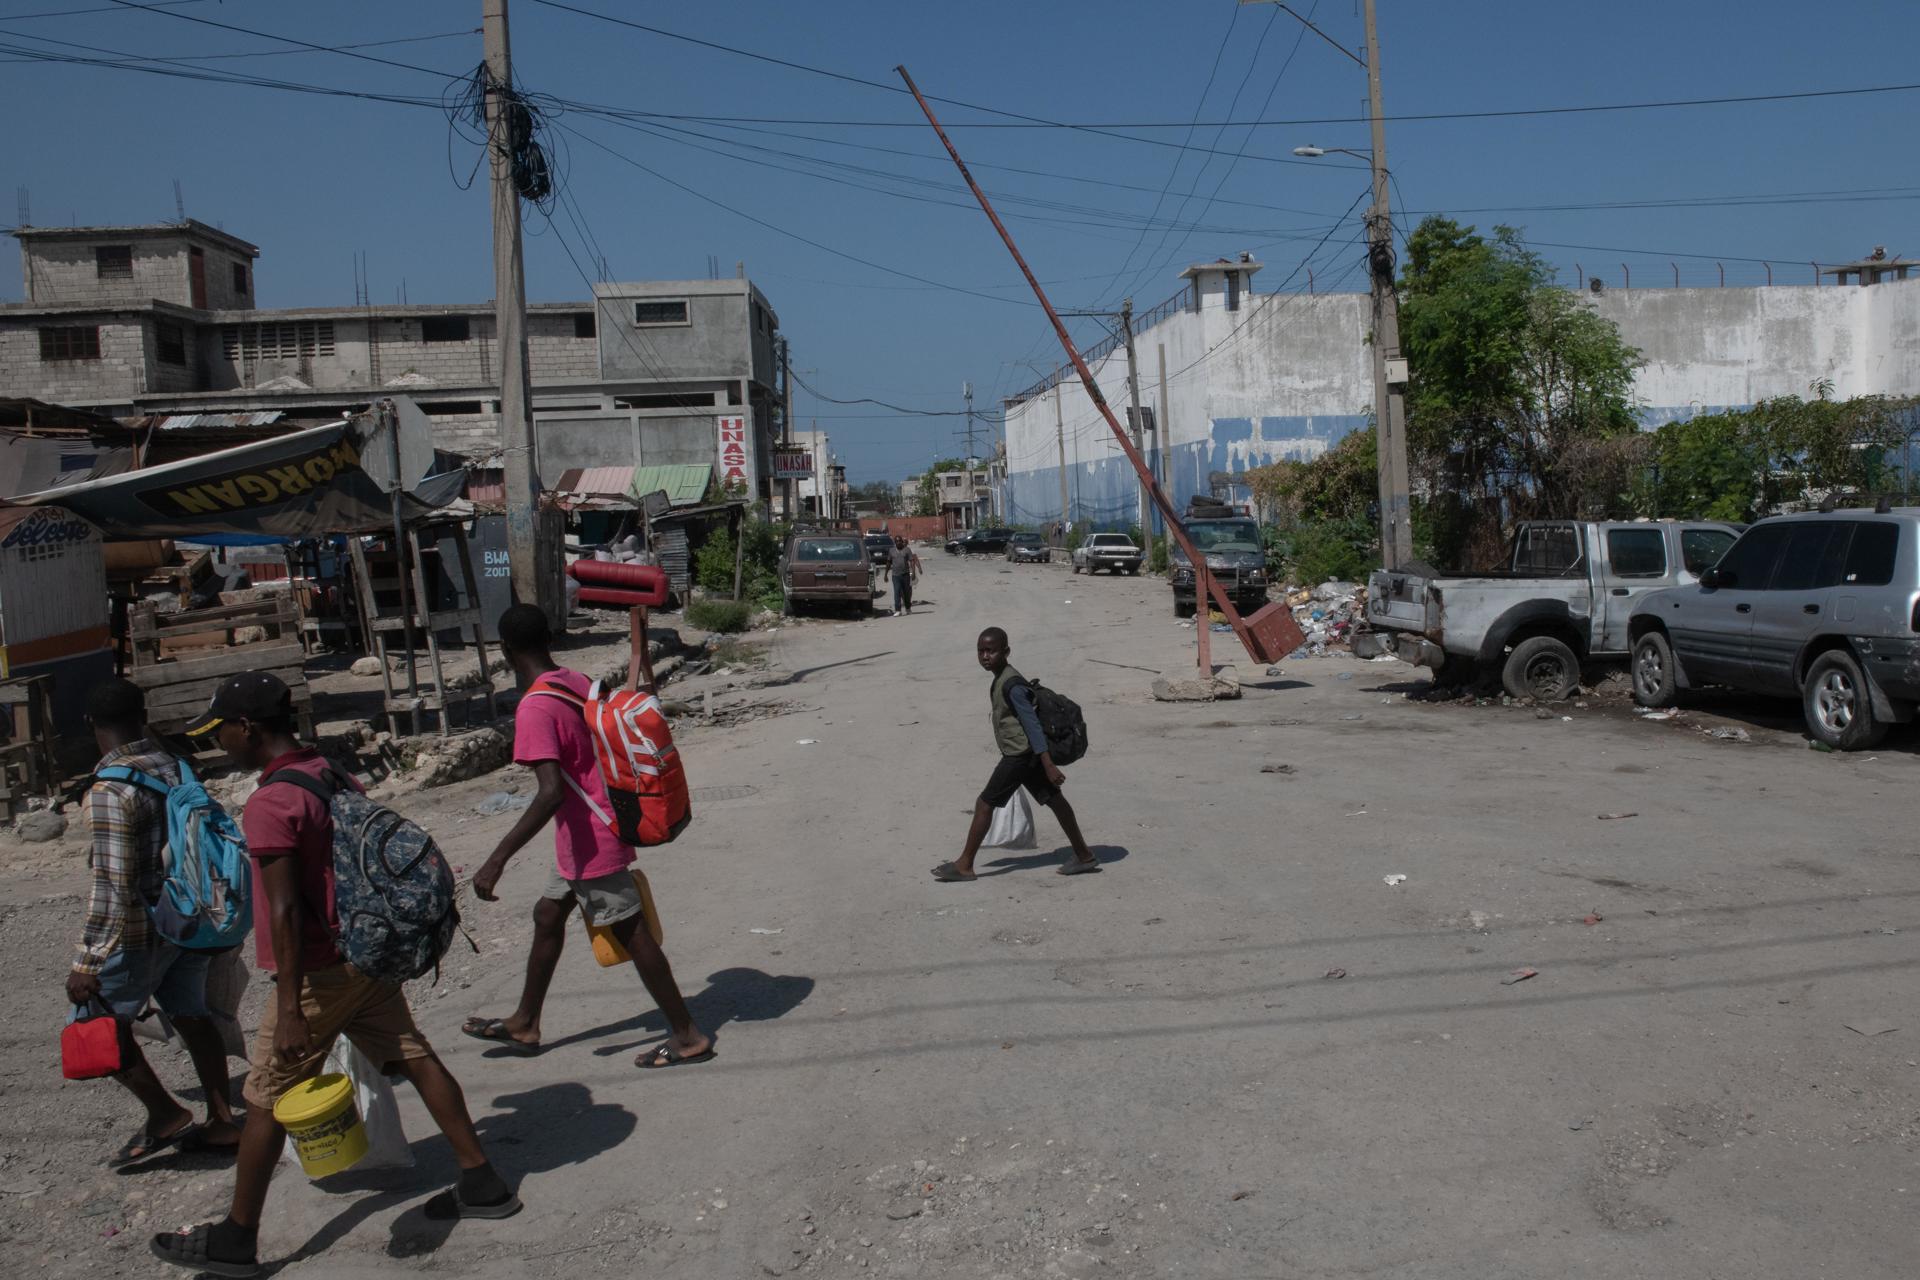 La revolución de los capos siembra el caos en Haití